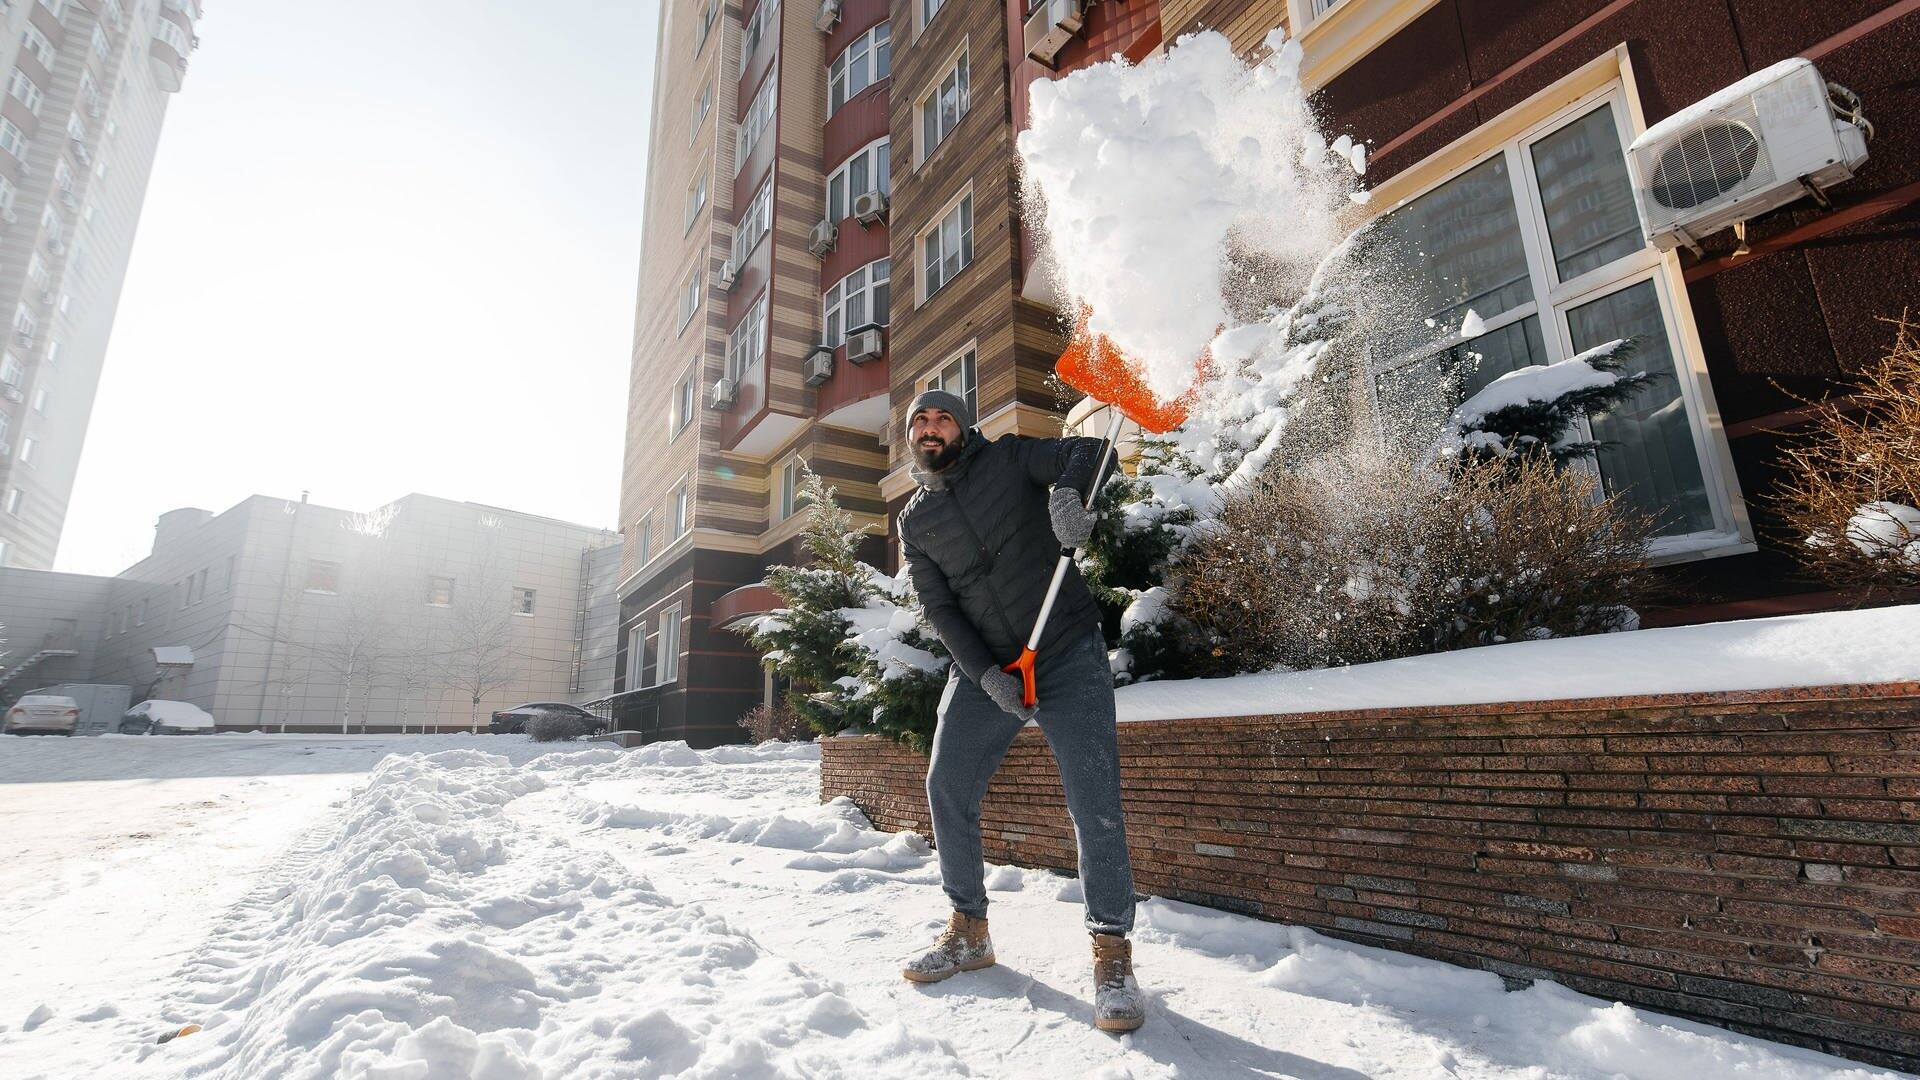 Mann räumt Schnee mit einer Schneeschaufel weg (Foto: AdobeStock: Astrid Gast)